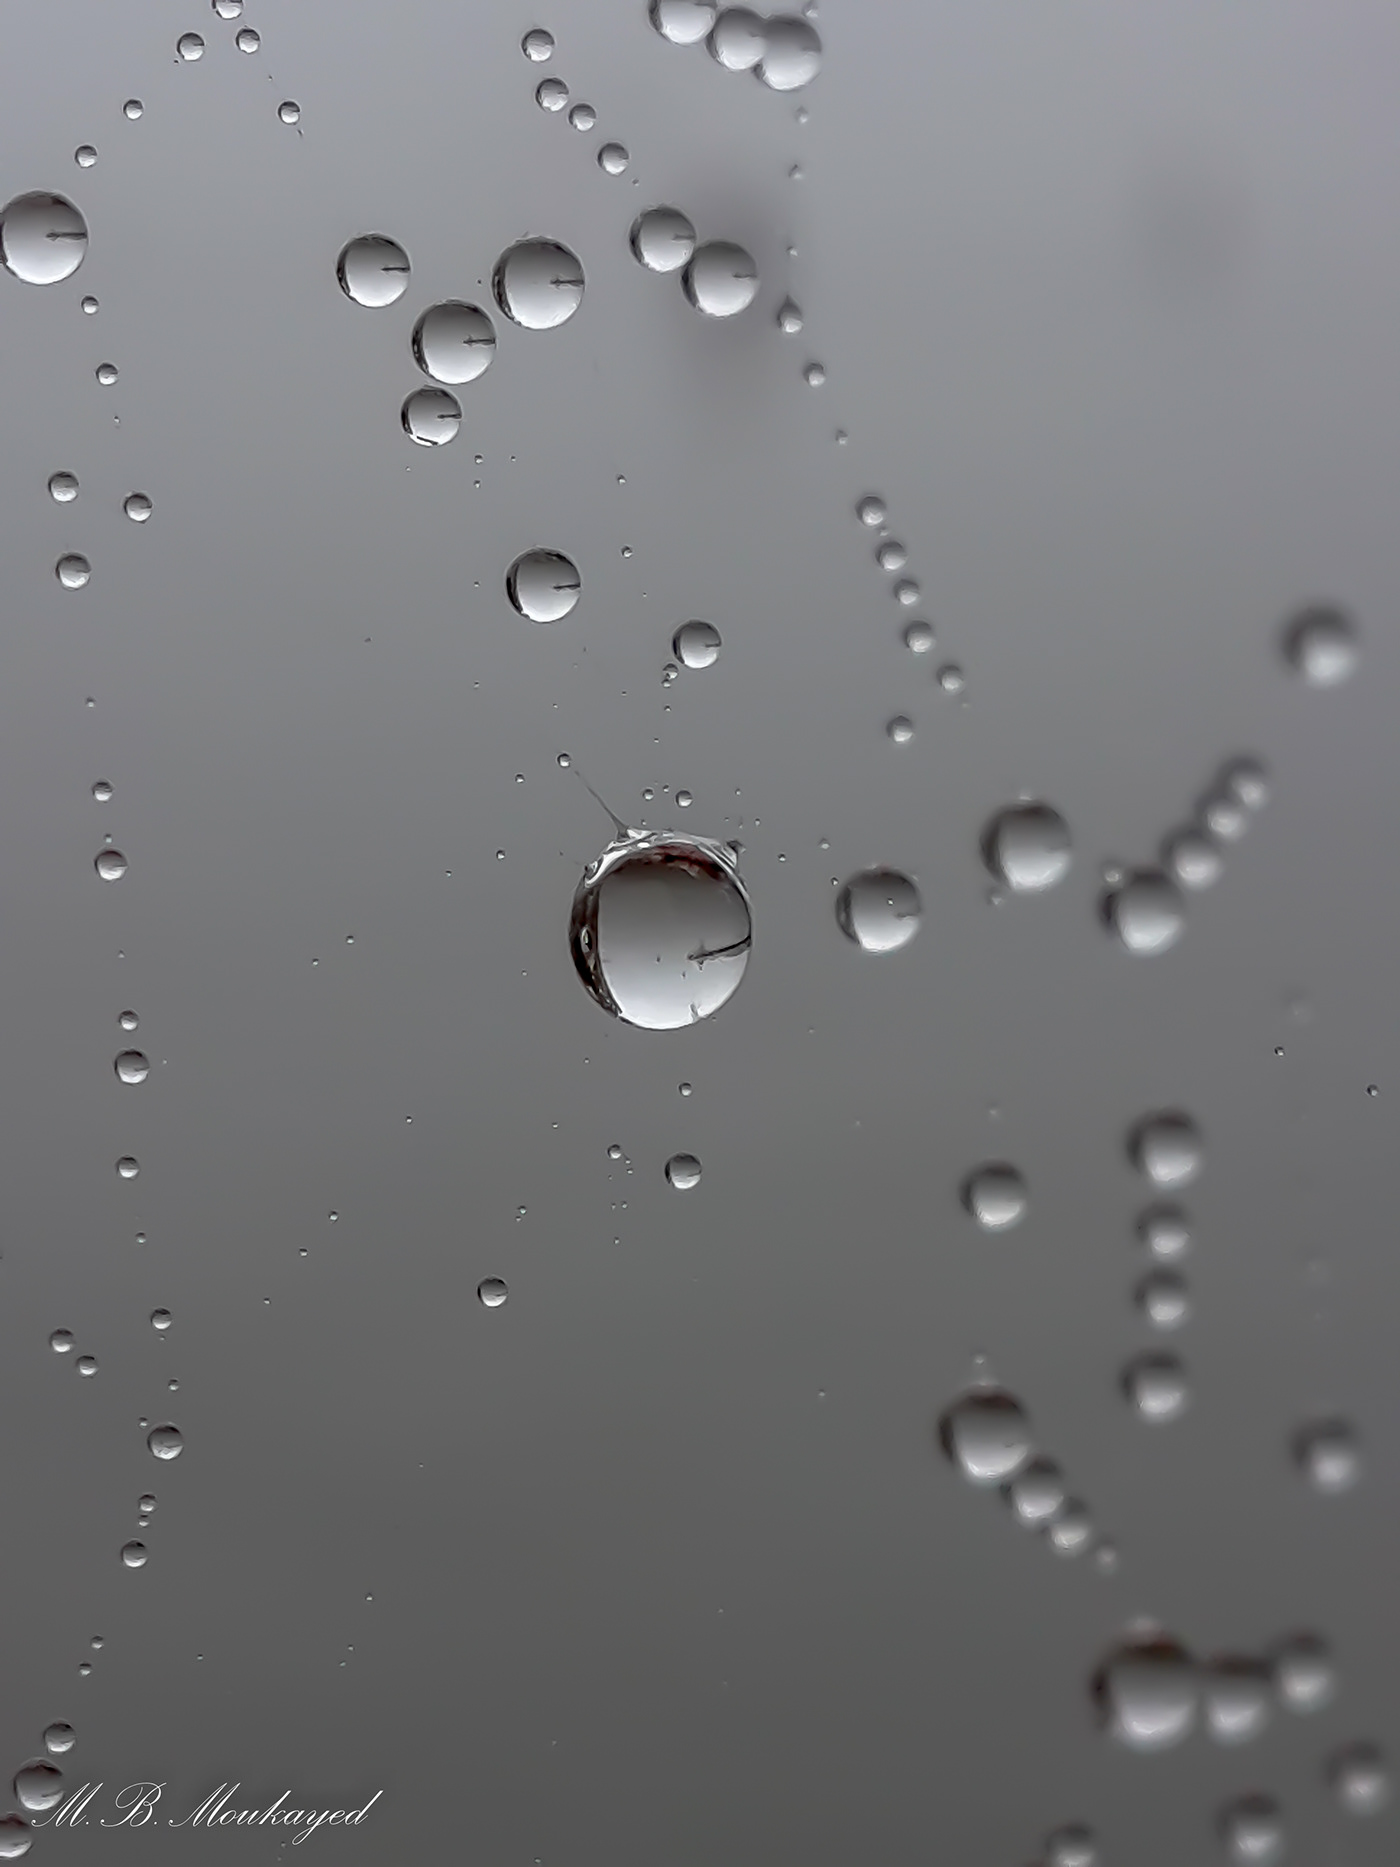 Web of dew drops